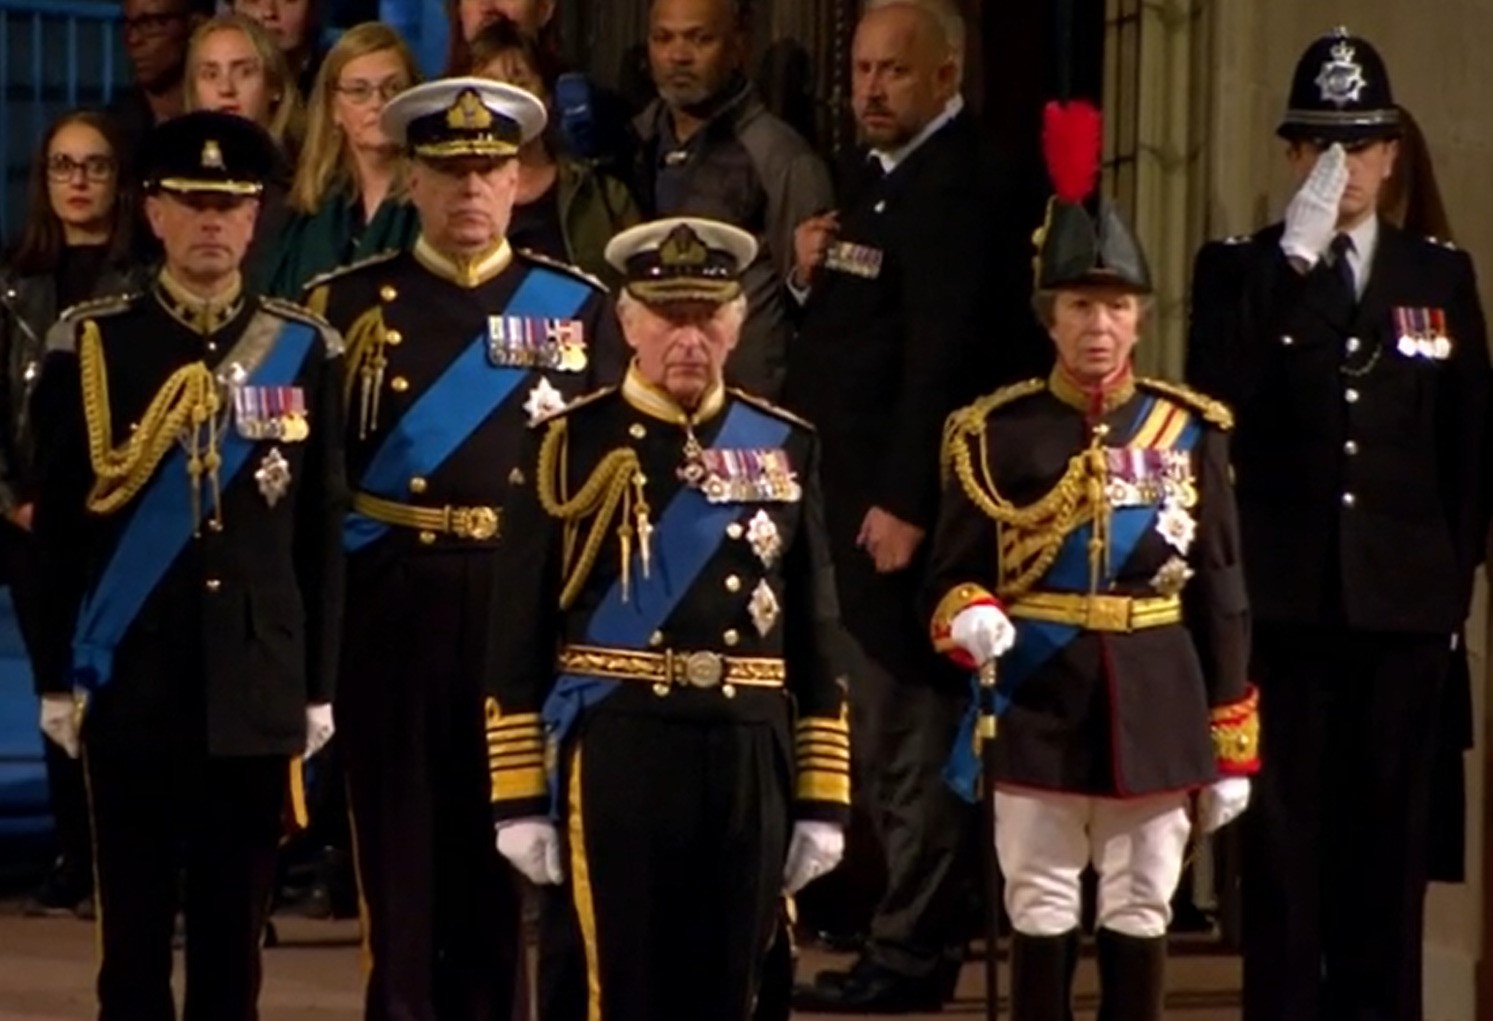 Le roi Charles, le prince Andrew, la princesse Anne et le prince Edward se tiennent en tenue militaire dans une salle.